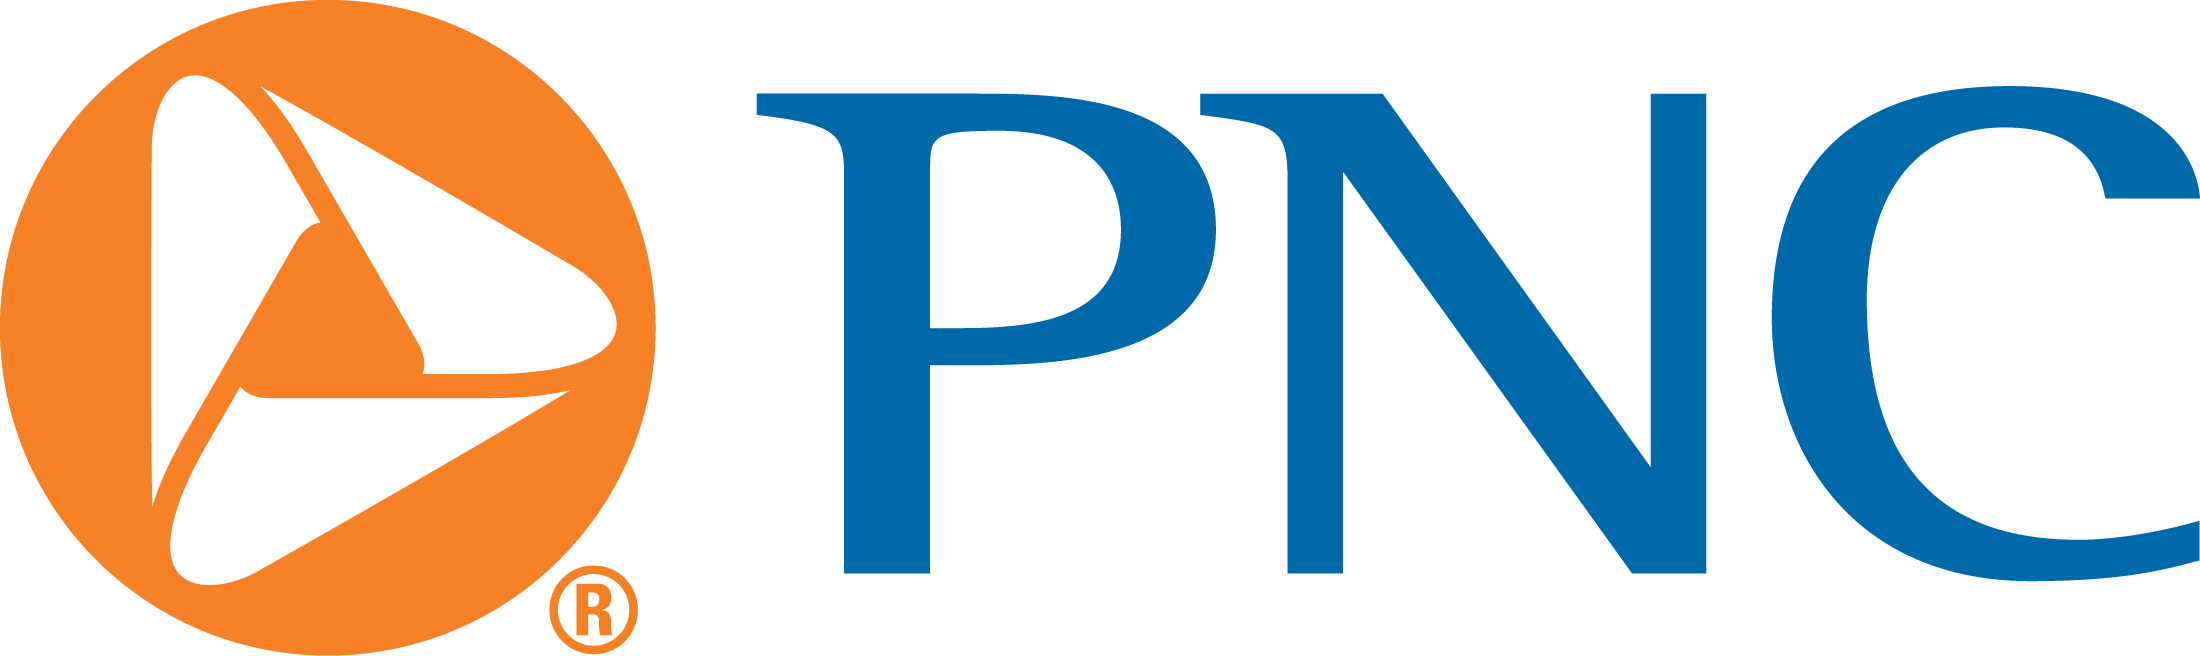 pnc-bank-logo